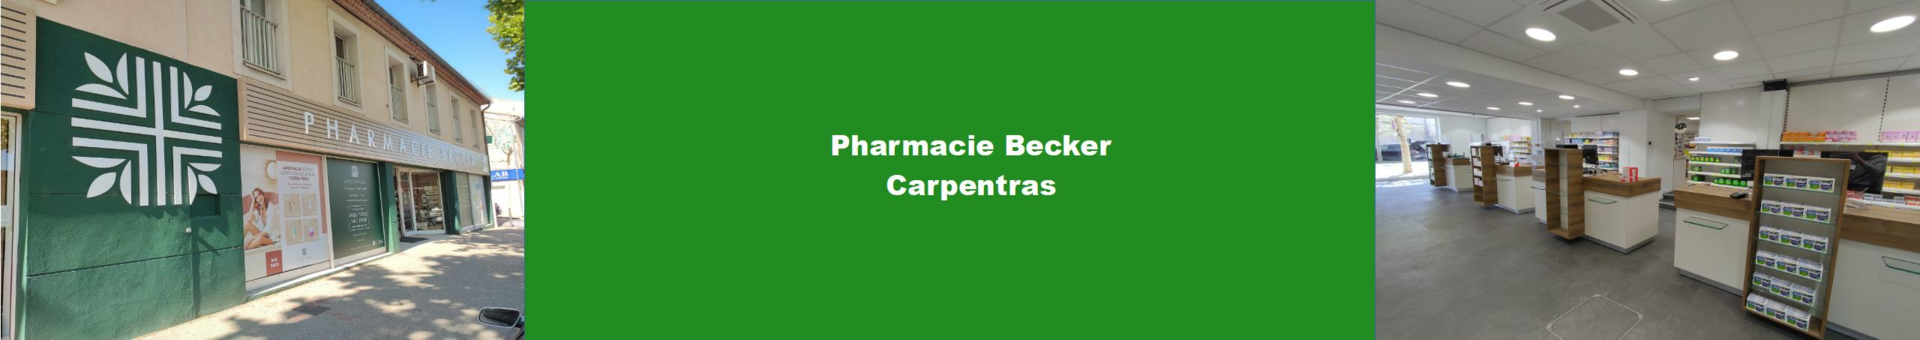 Pharmacie Becker Carpentras,CARPENTRAS